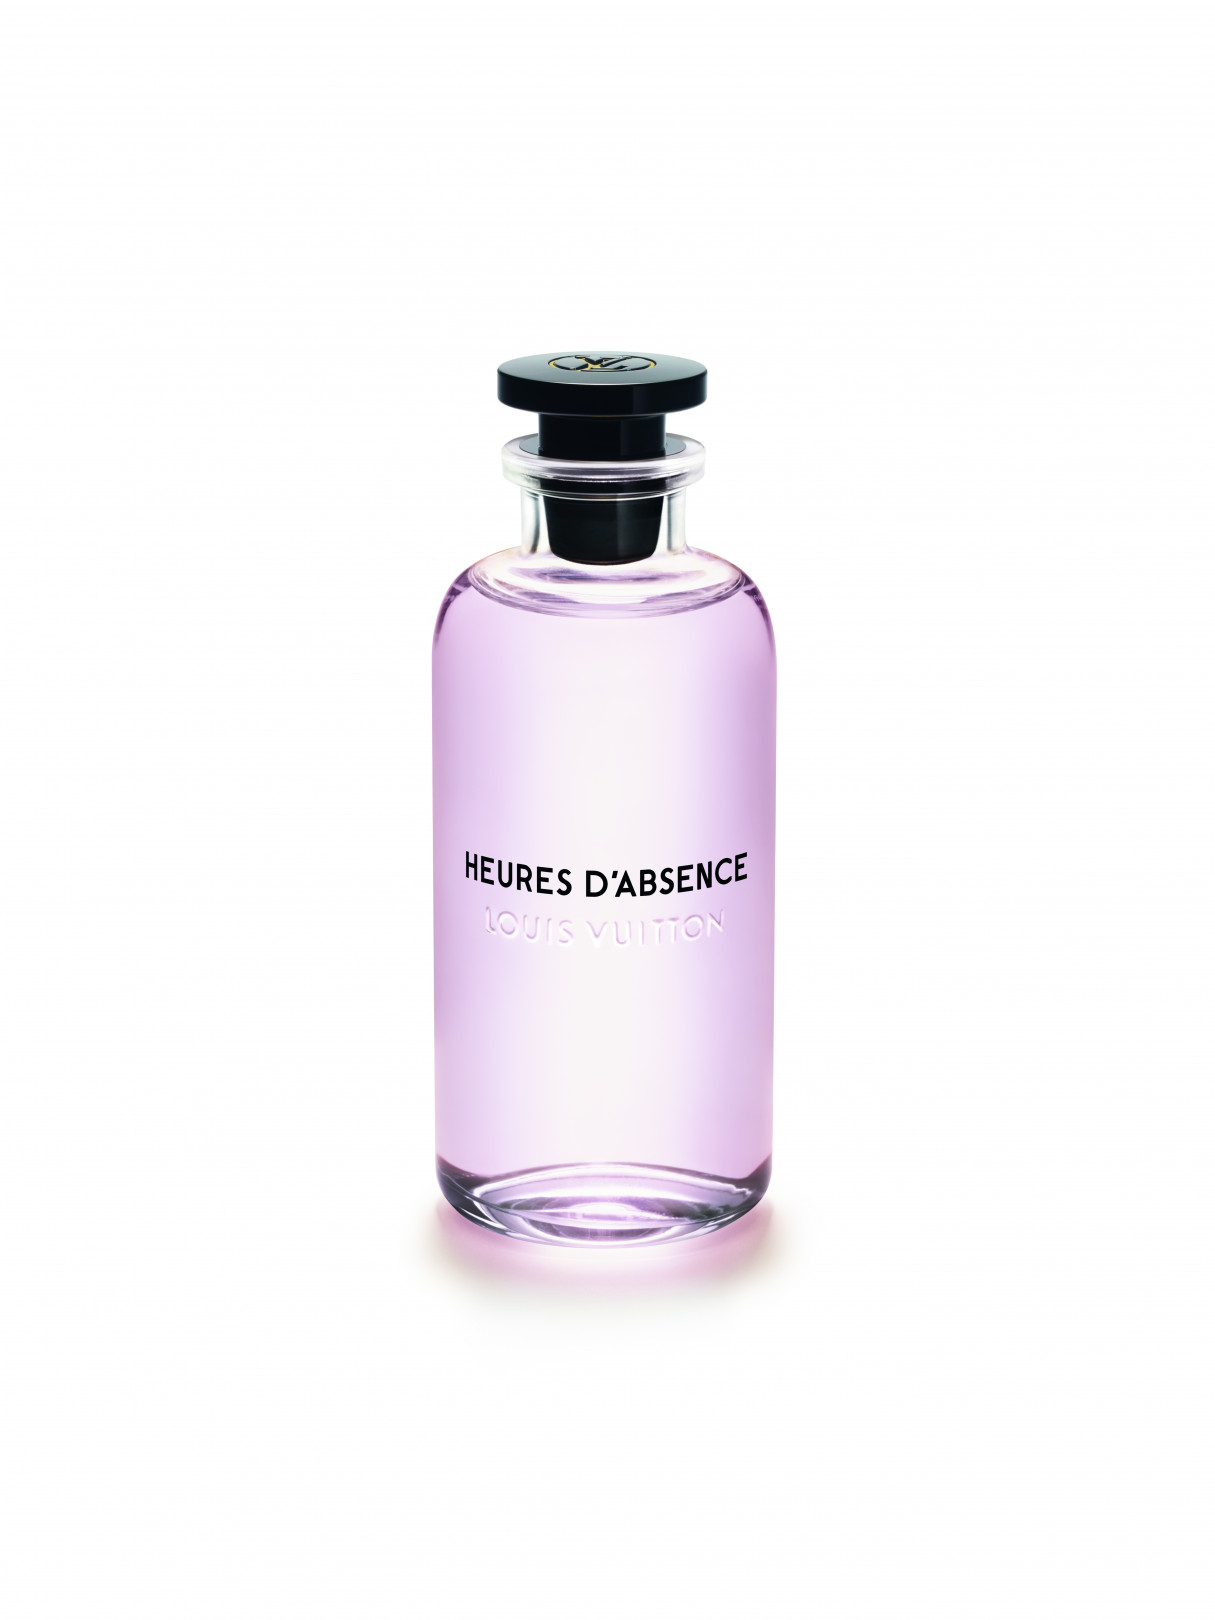 ルイ・ヴィトンの新作フレグランス「ウール・ダプサンス」発売、ブーケのような花々の香り | PHOTO(11/14) | FASHION HEADLINE